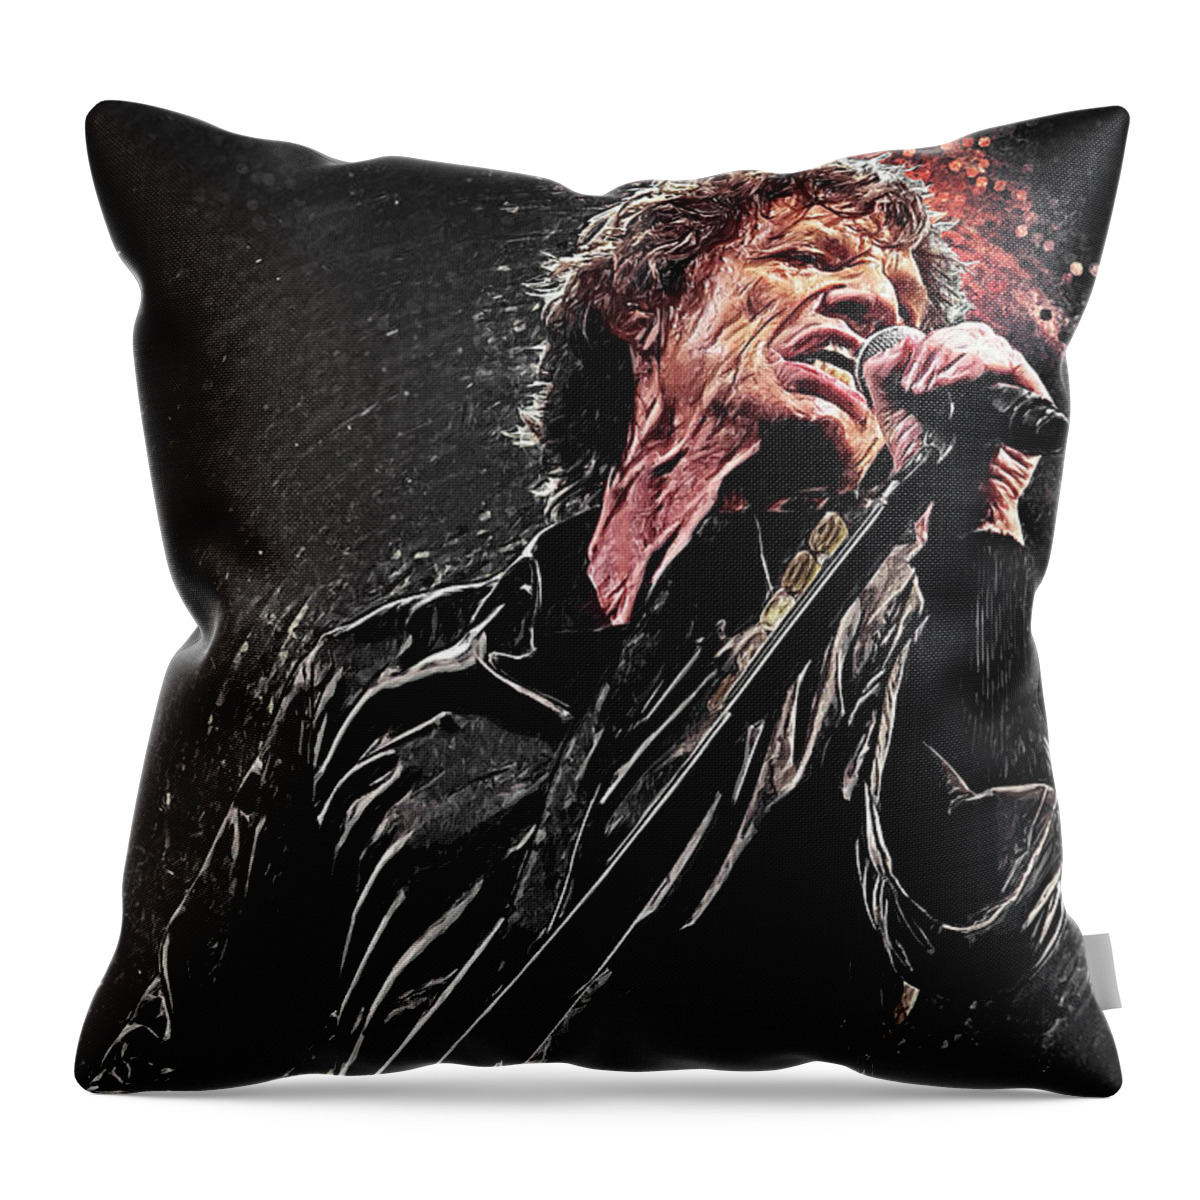 Mick Jagger Throw Pillow featuring the digital art Mick Jagger by Hoolst Design